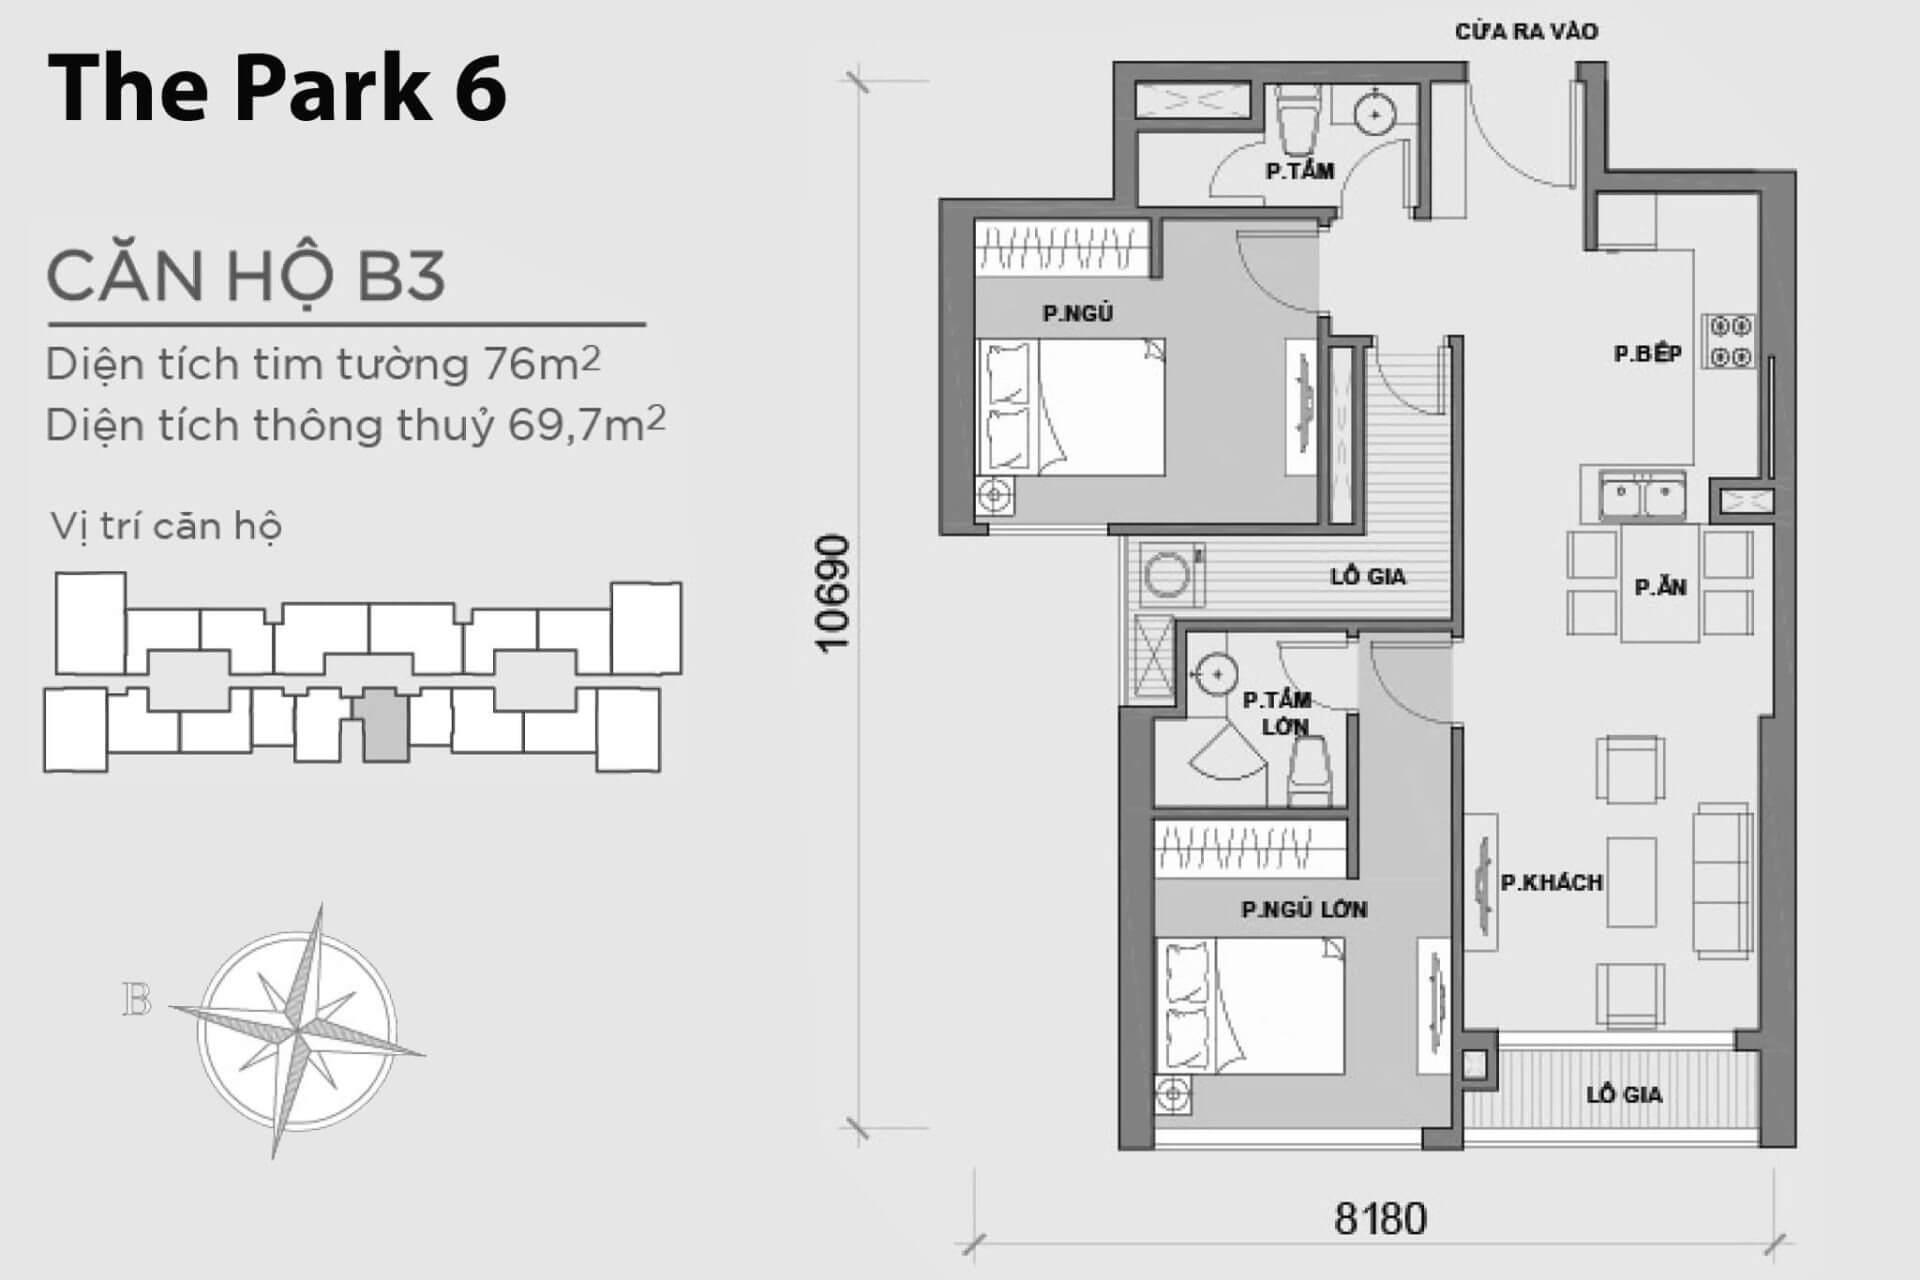 mặt bằng layout Park 6 căn hộ B3 P6B-03